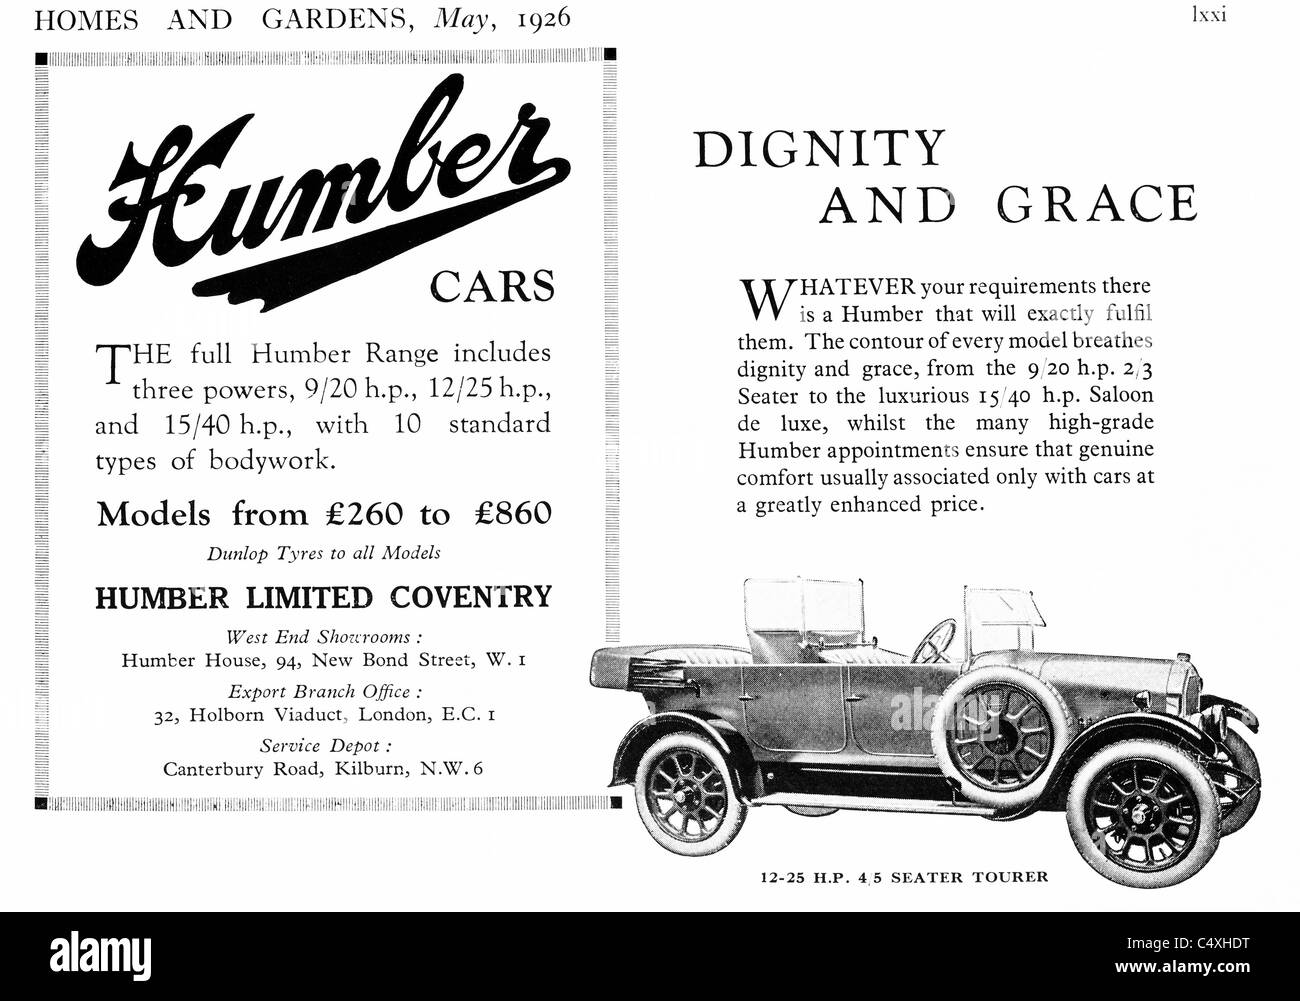 1926 Humber "Cars" annonce de "Maisons et Jardins" magazine. Banque D'Images